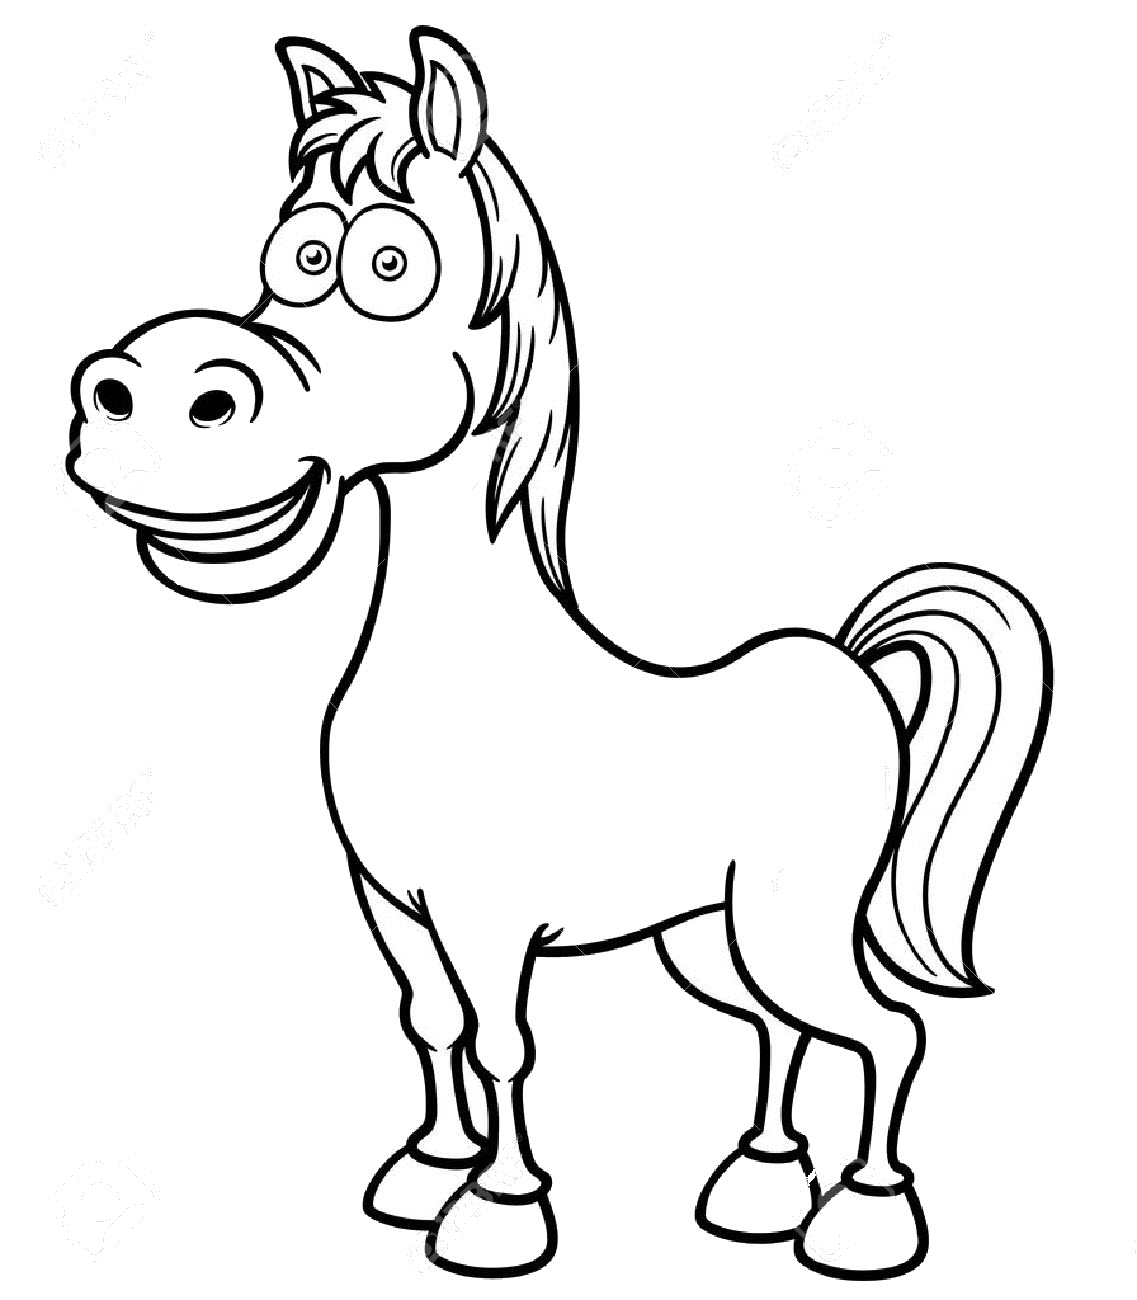 My Little Pony - Jumbo - Tô Màu Và Các Trò Chơi - Tập 1 (TB)